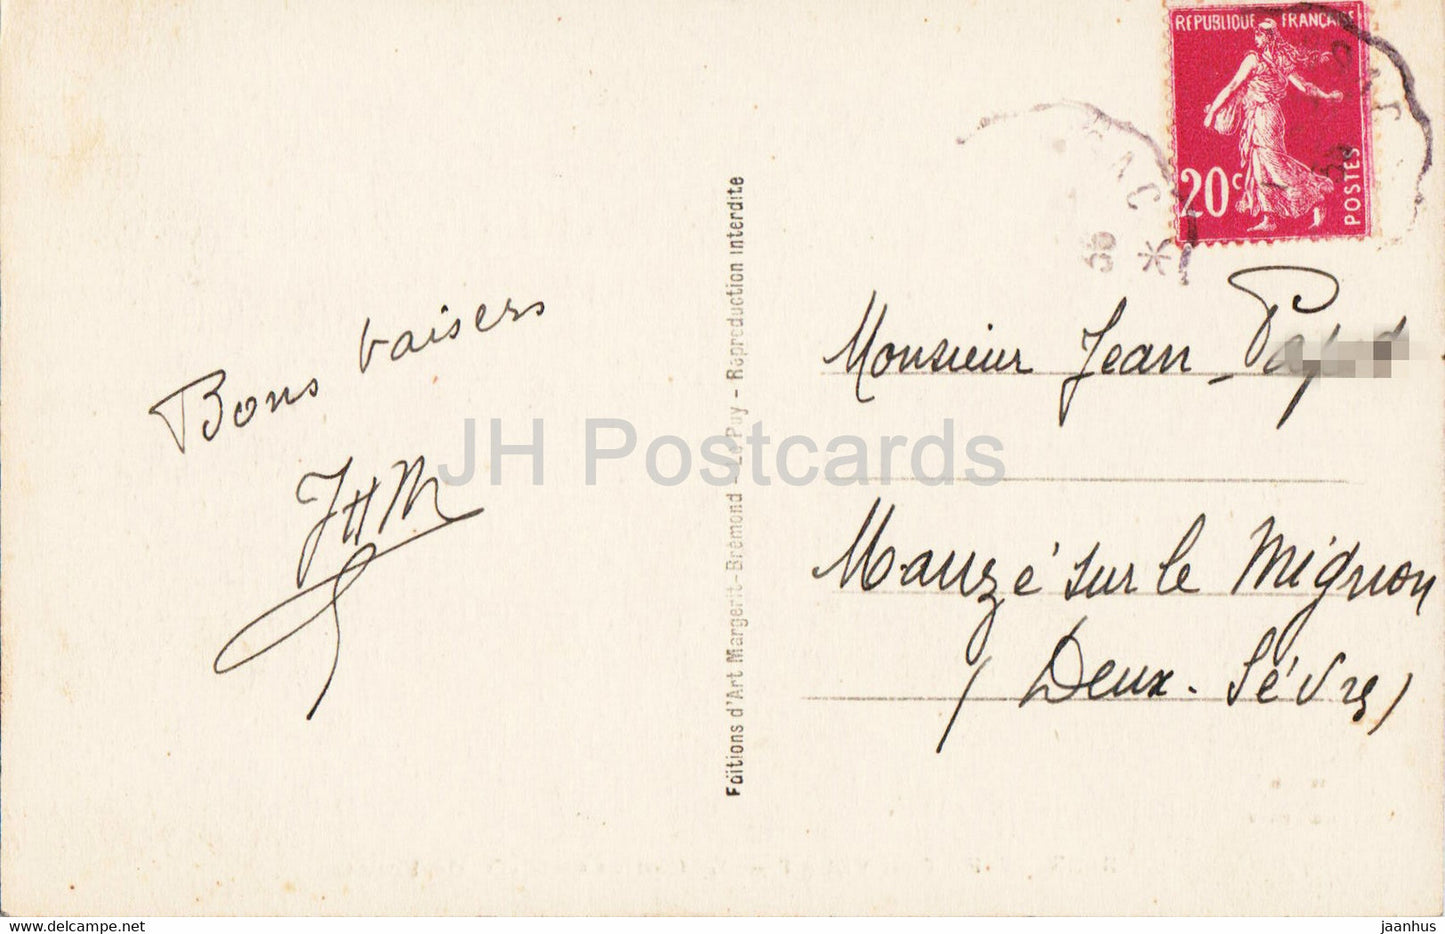 Le Puy en Velay - Le Cloitre et ND de France - 3025 - carte postale ancienne - 1935 - France - occasion